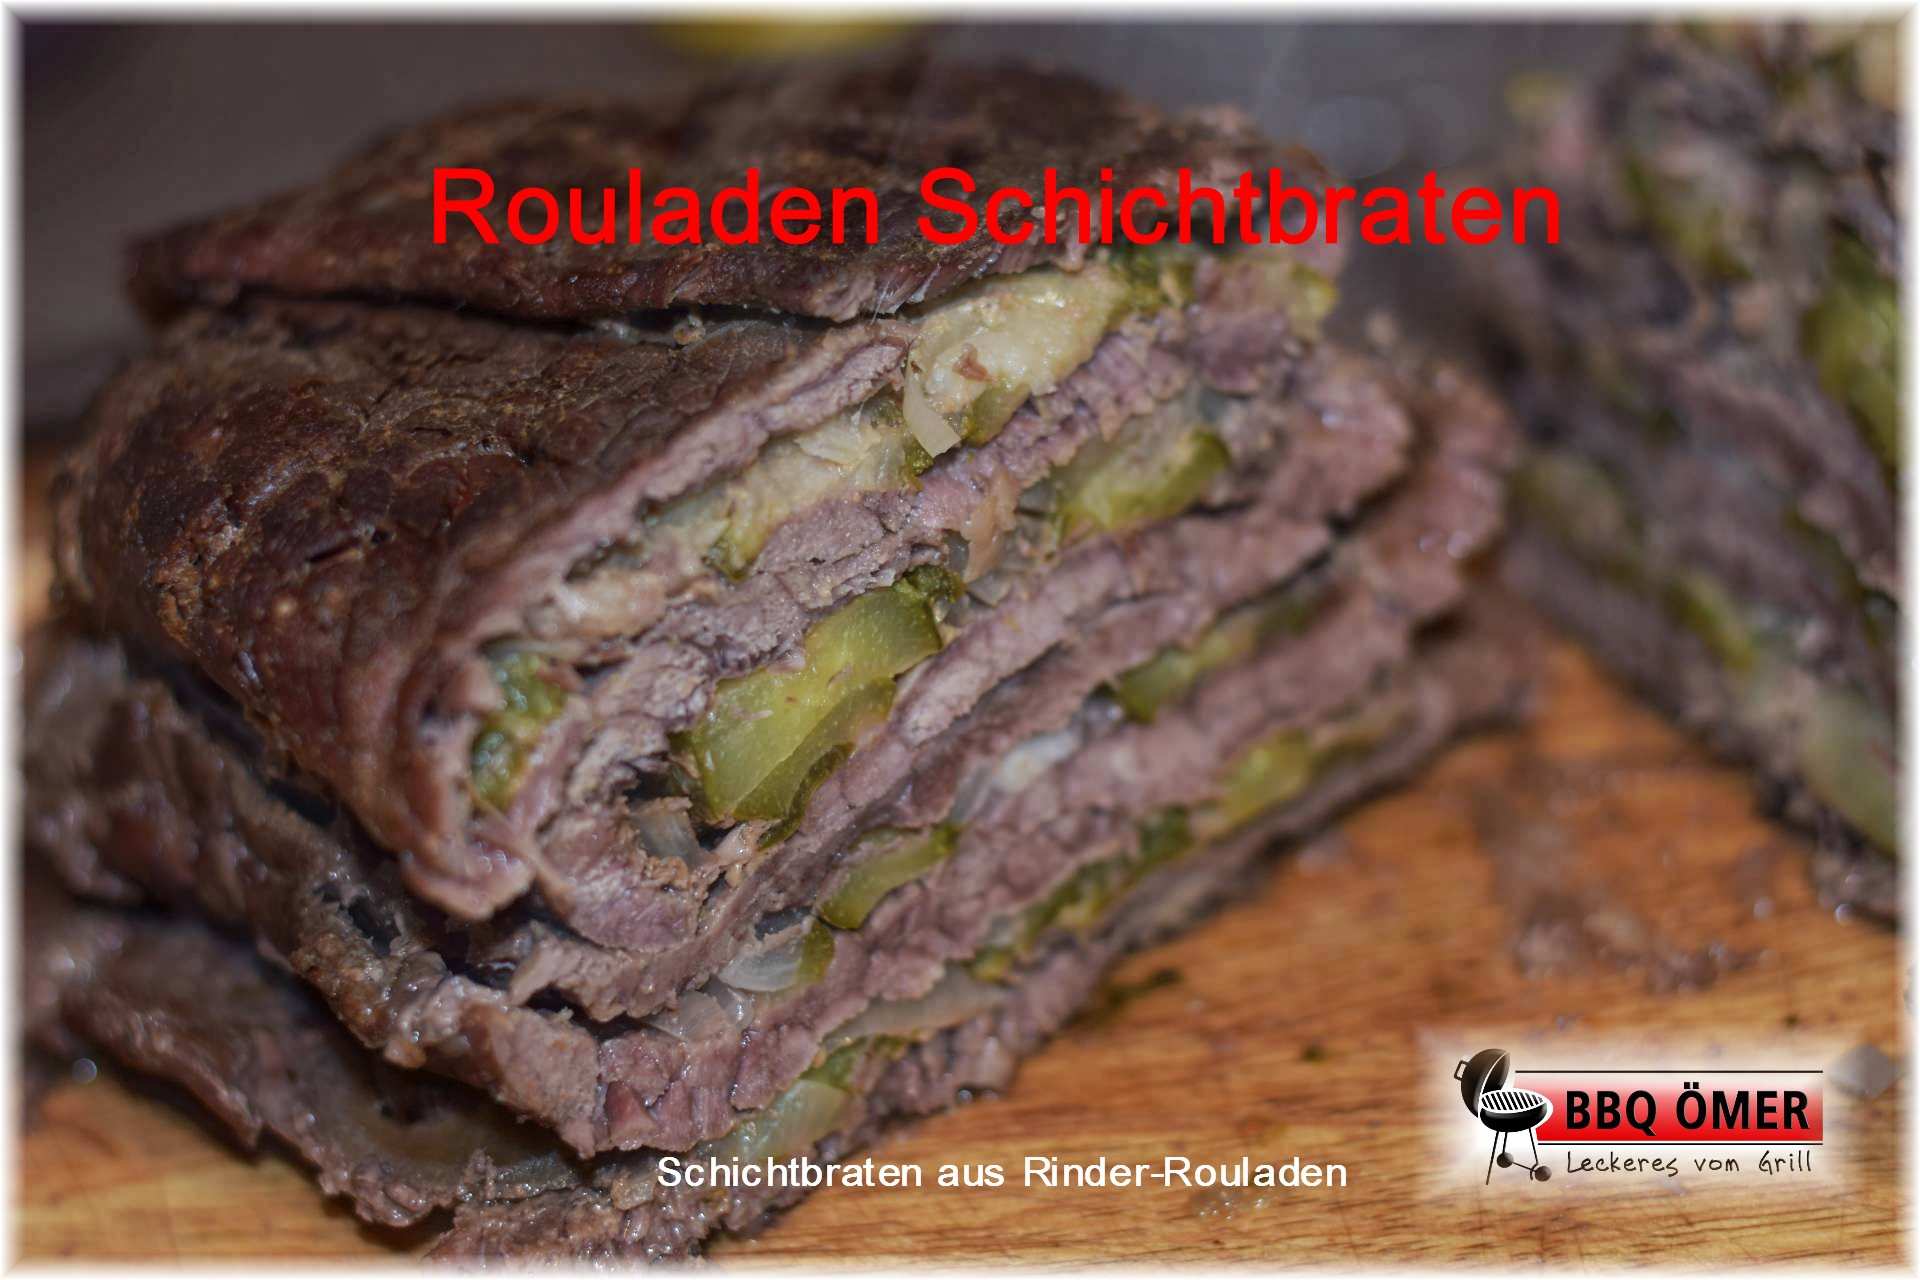 Schichtbraten Mit Rinder Rouladen Rouladen Schichtbraten Bbq Omer